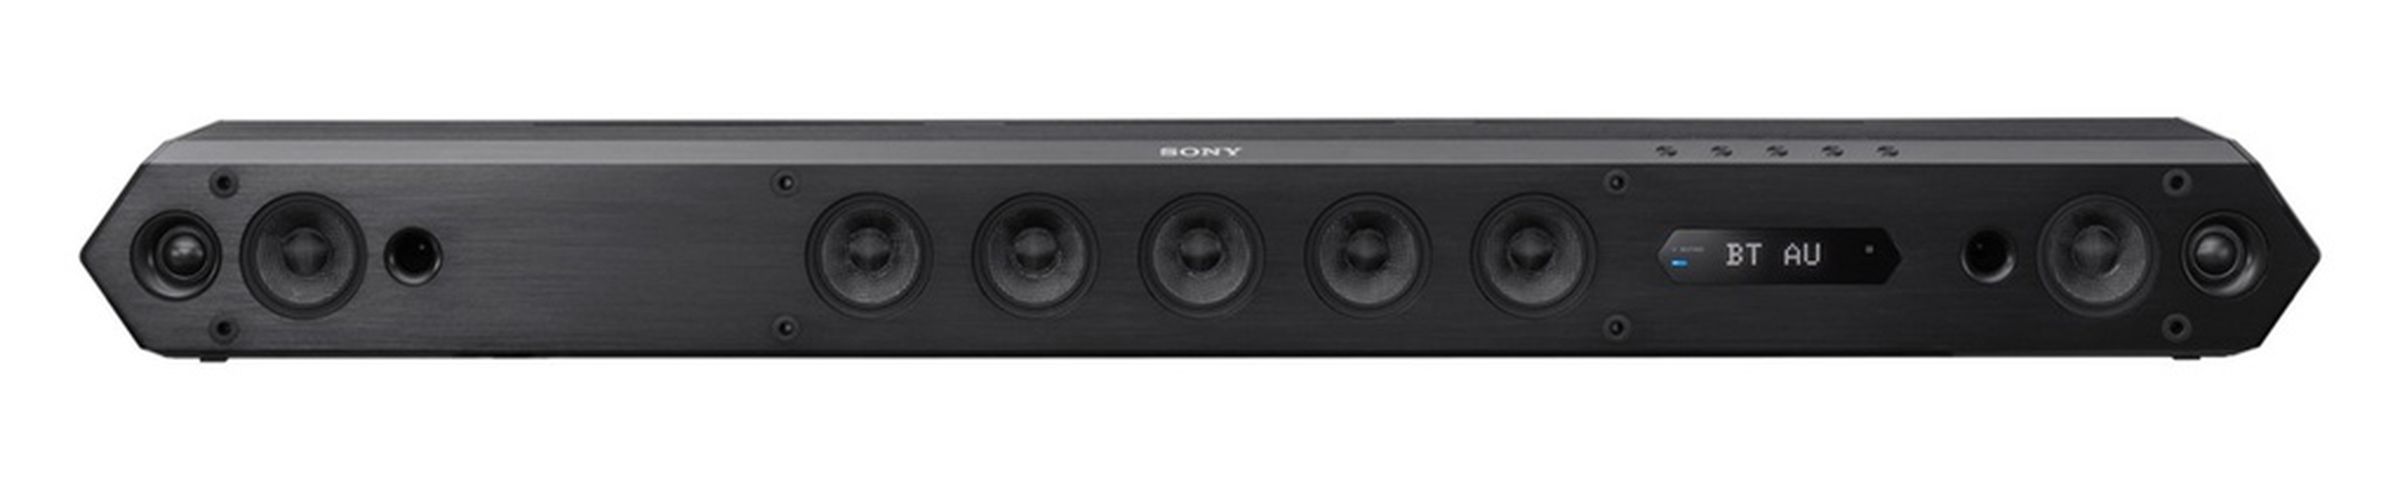 Sony HT-ST7 soundbar photos